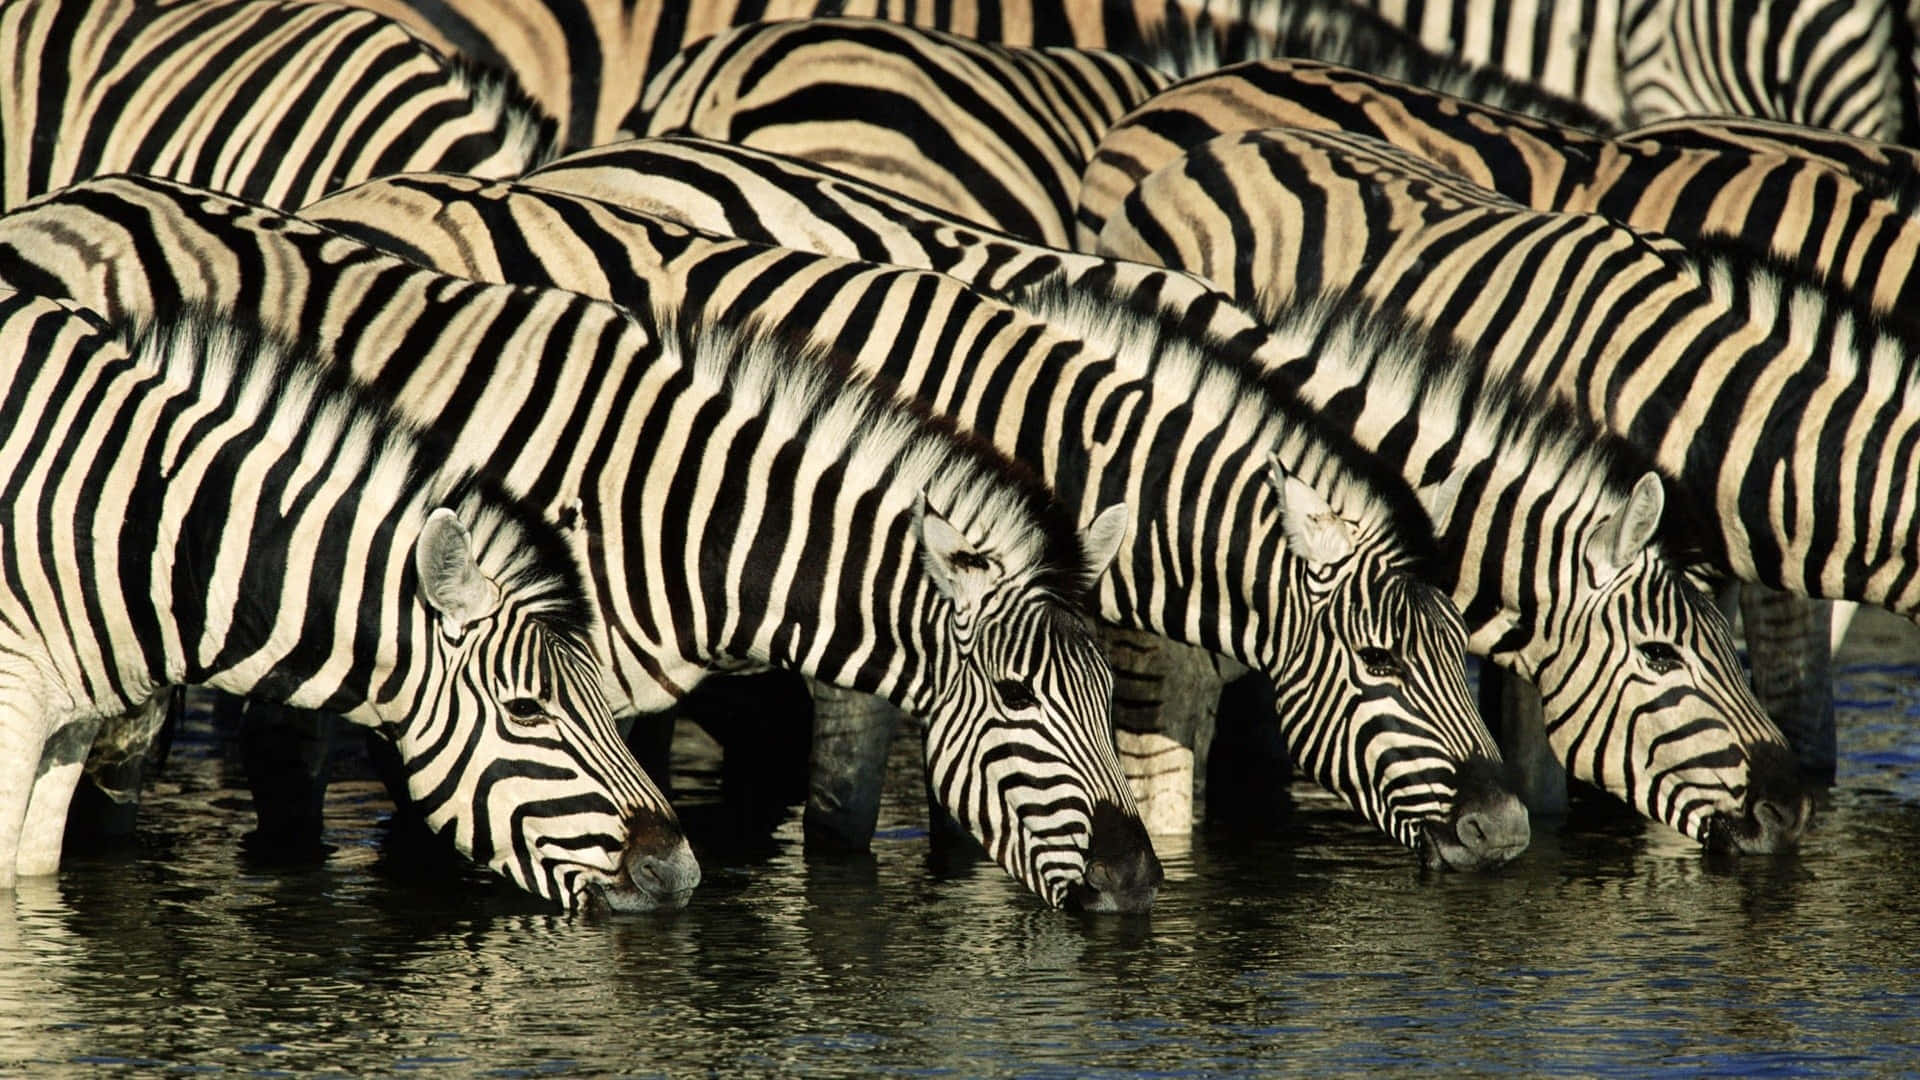 Enmagnifik Zebra Som Betar I Sin Naturliga Miljö.